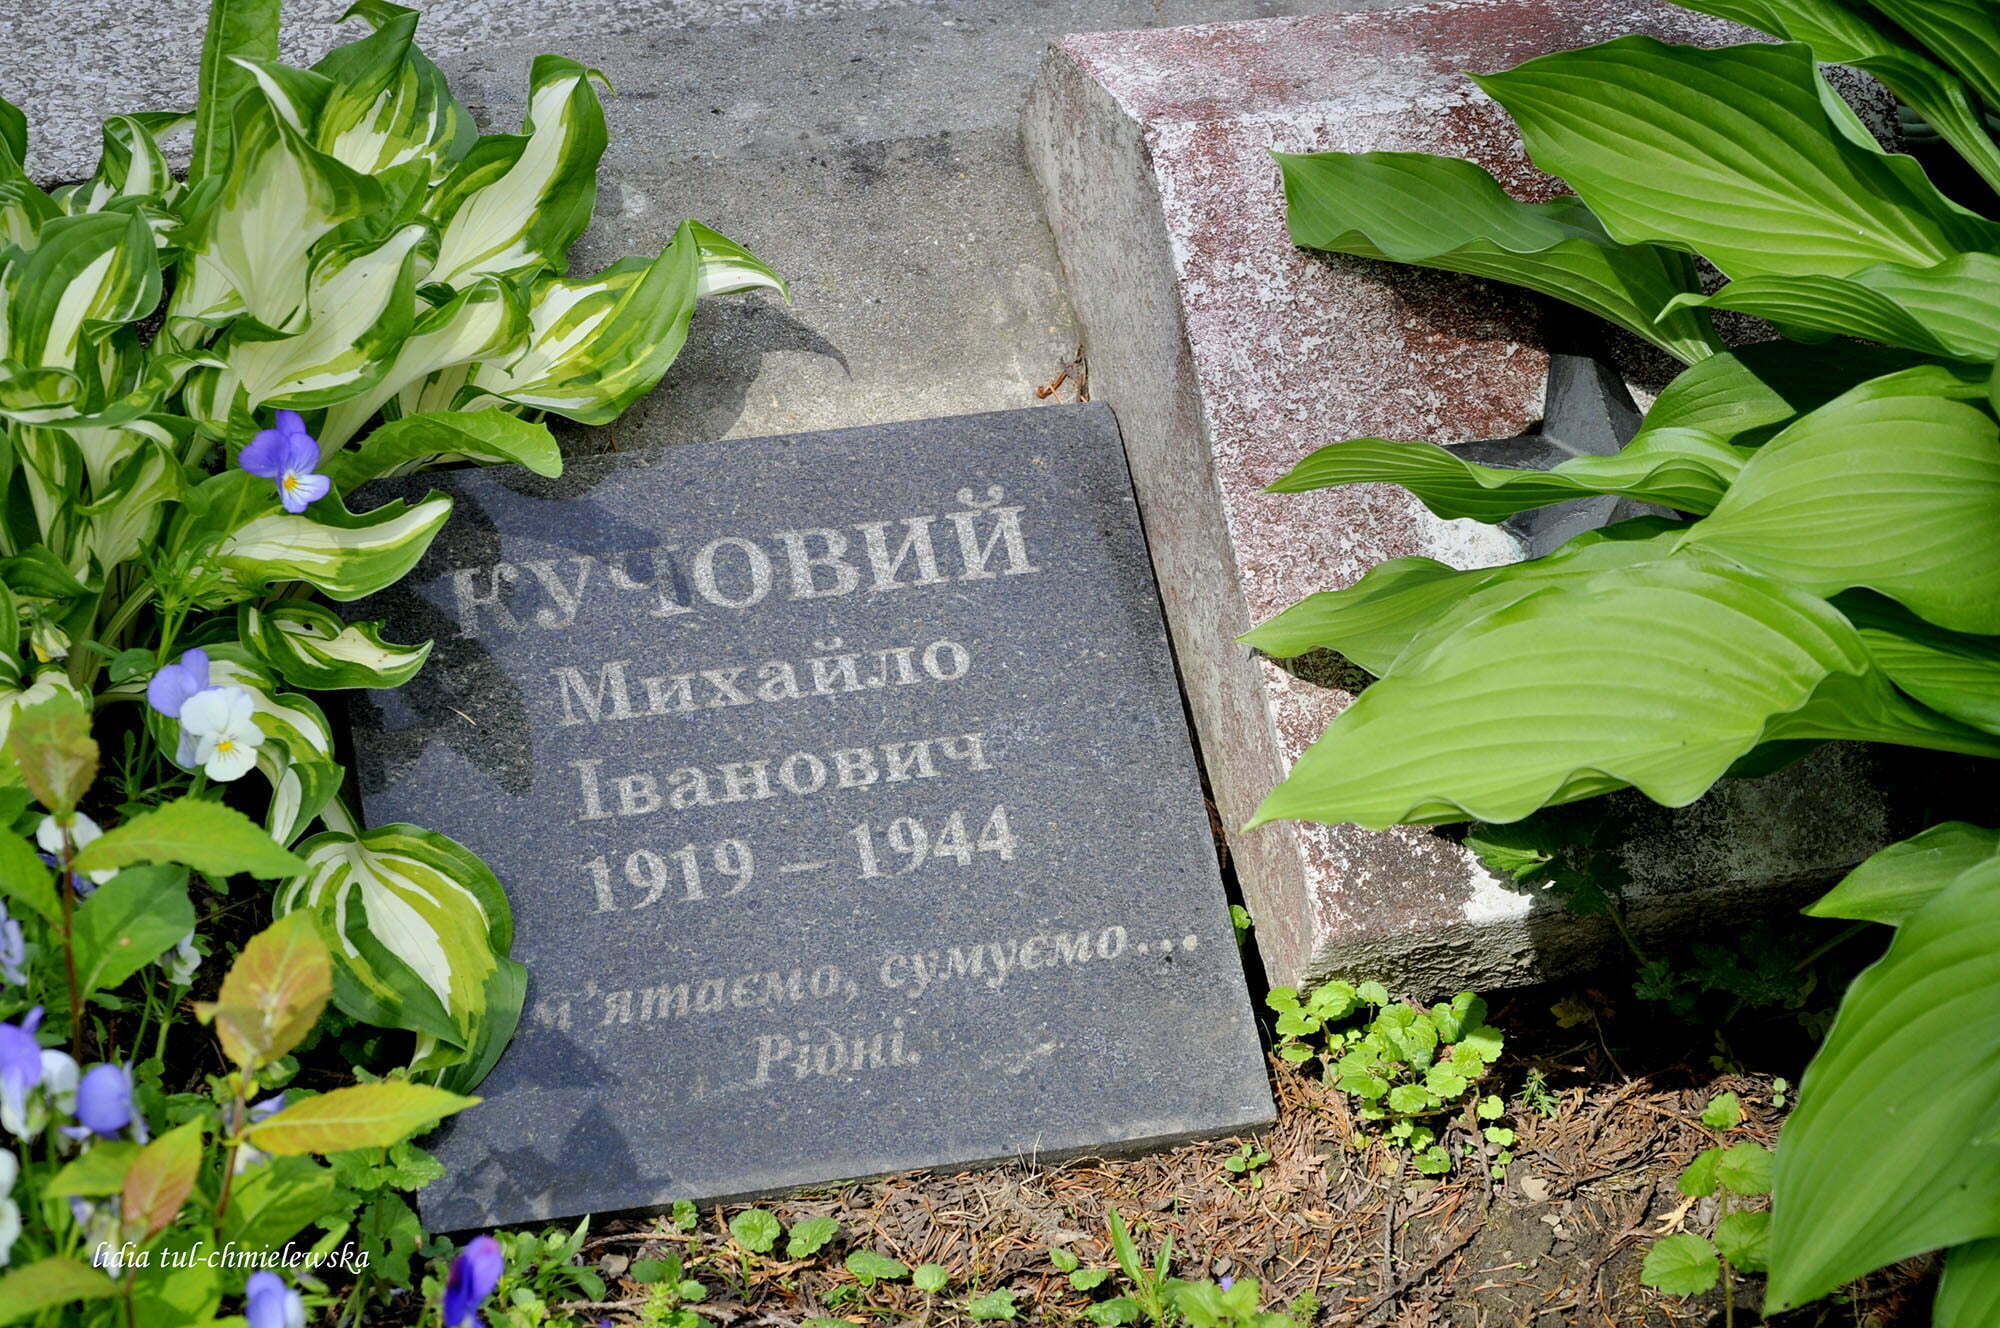 Cmentarz w Baligrodzie / fot. Lidia Tul-Chmielewska